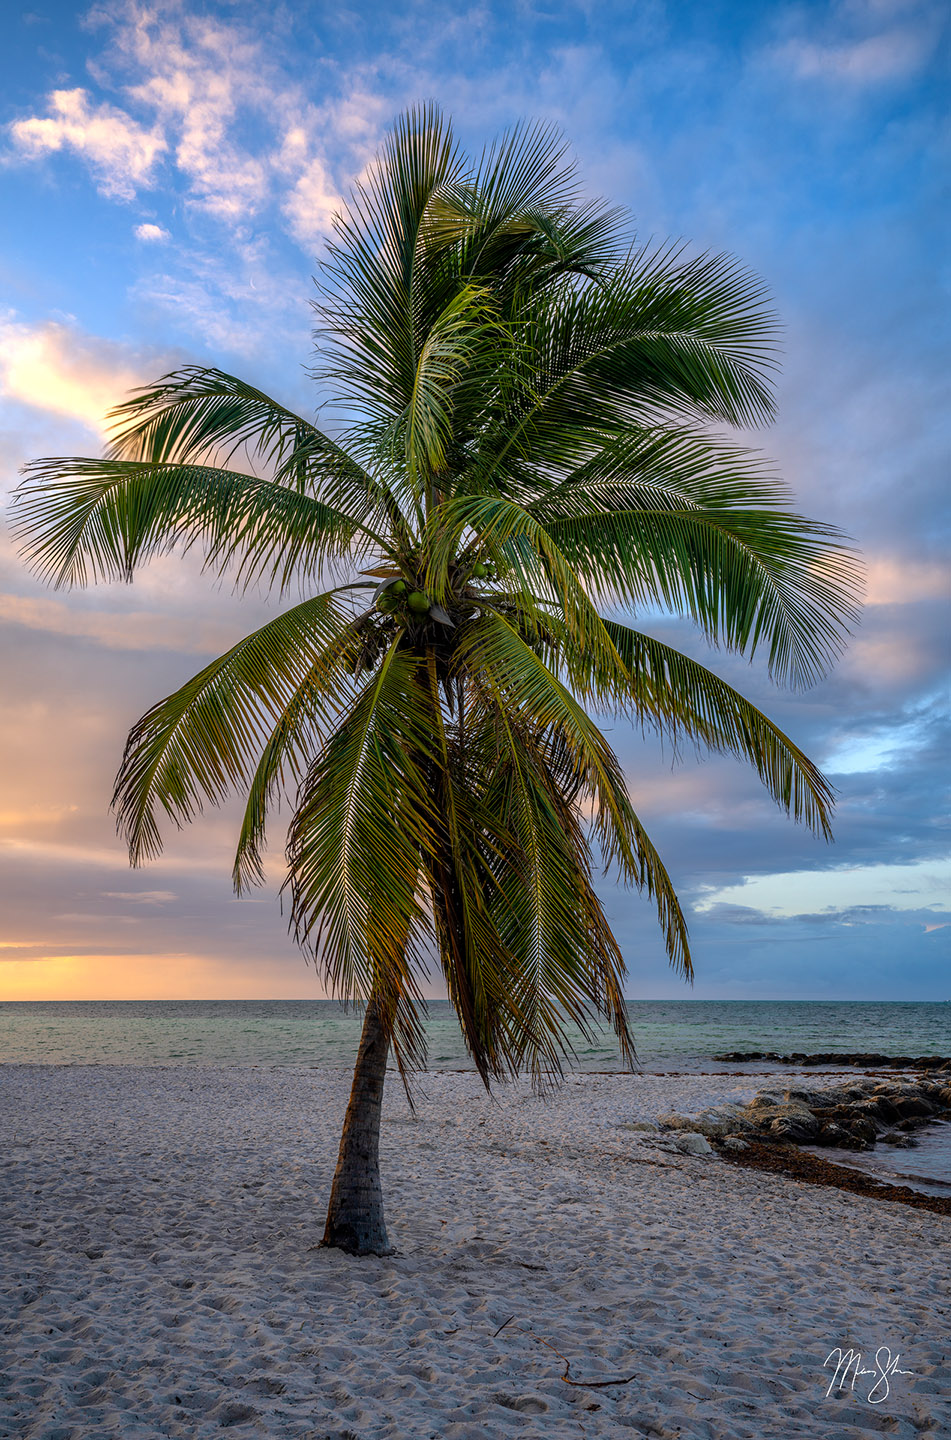 Key West Palm Tree Sunrise - Smathers Beach, Key West, Florida